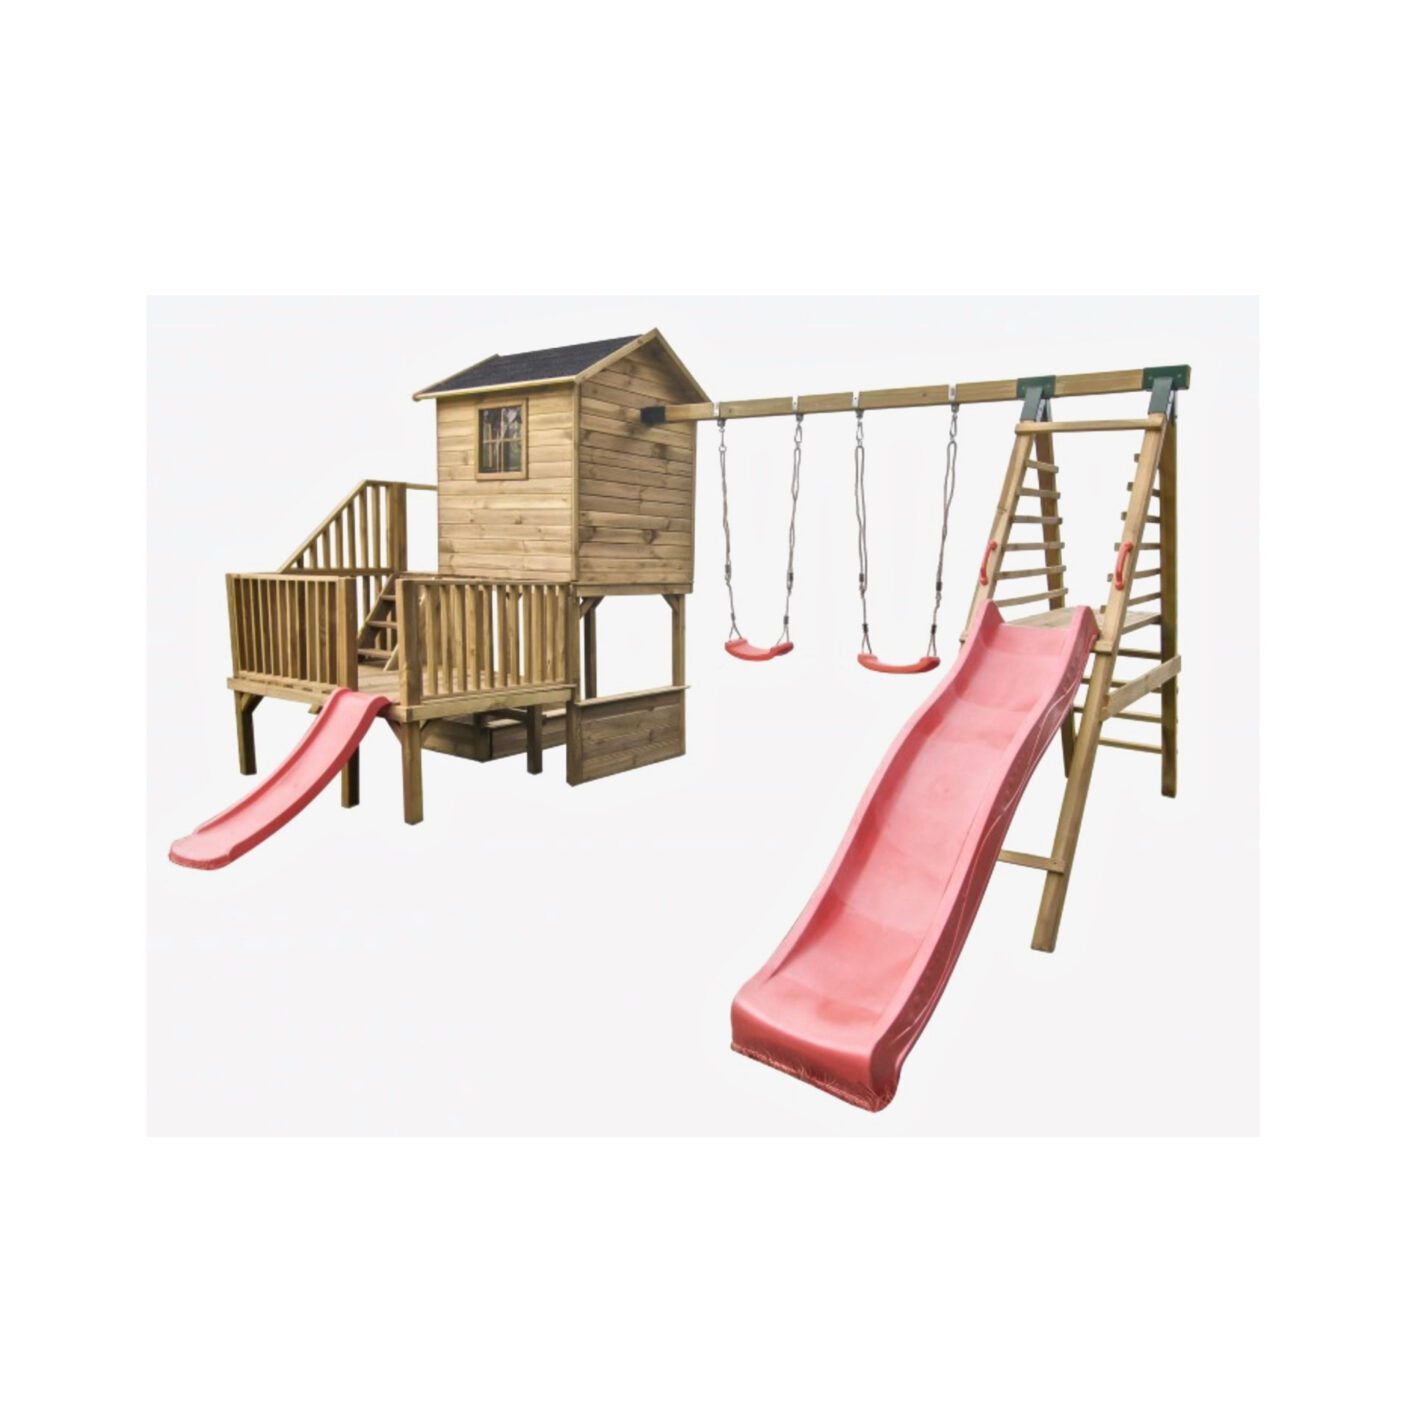 Medinis vaikų žaidimų namelis "Koriukas" su dvigubomis sūpynėmis ir laipiojimo kopetėlėmis